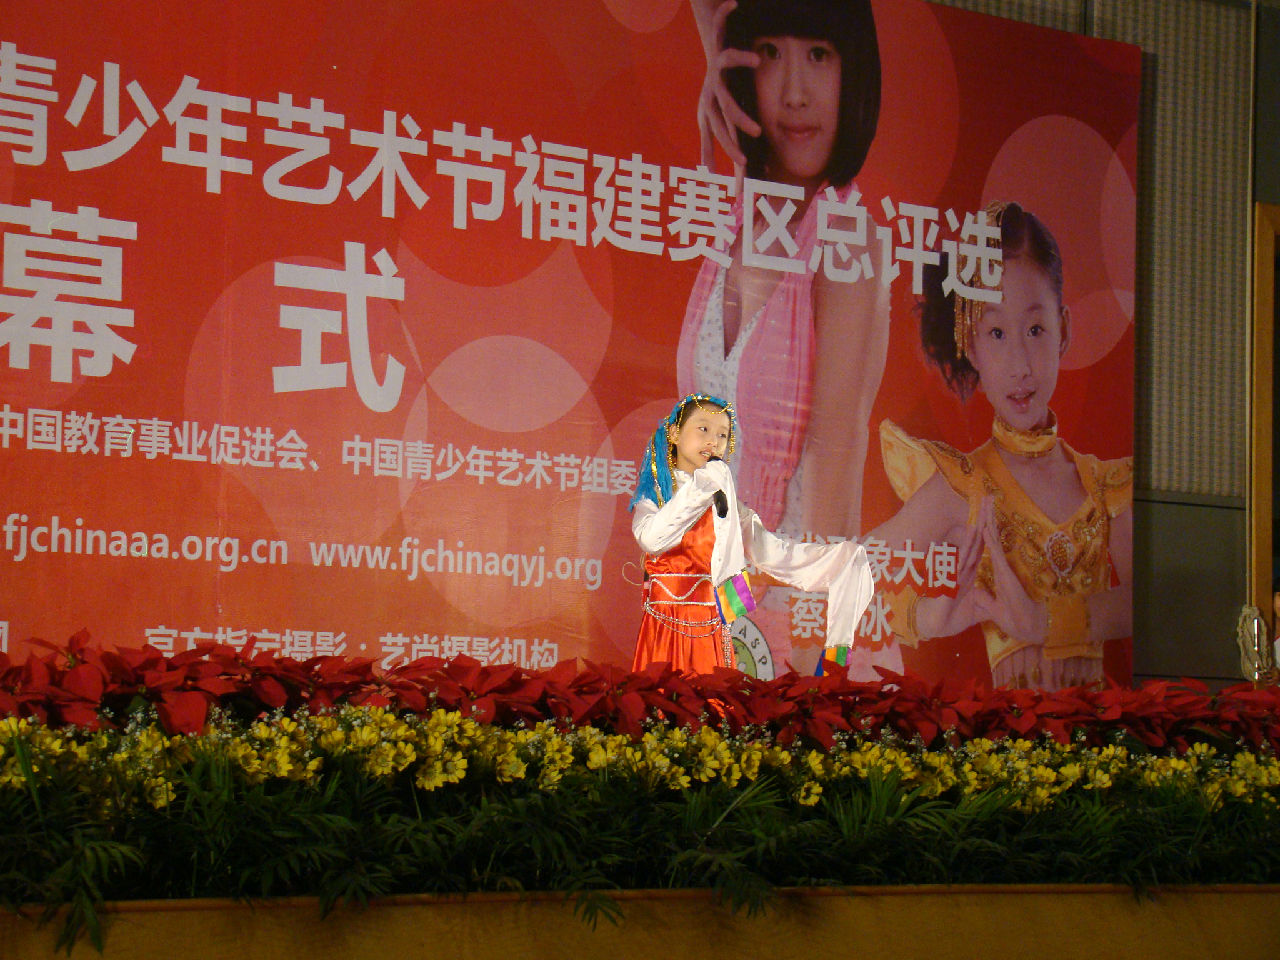 第六屆中國青少年藝術節福建賽區現象小天使